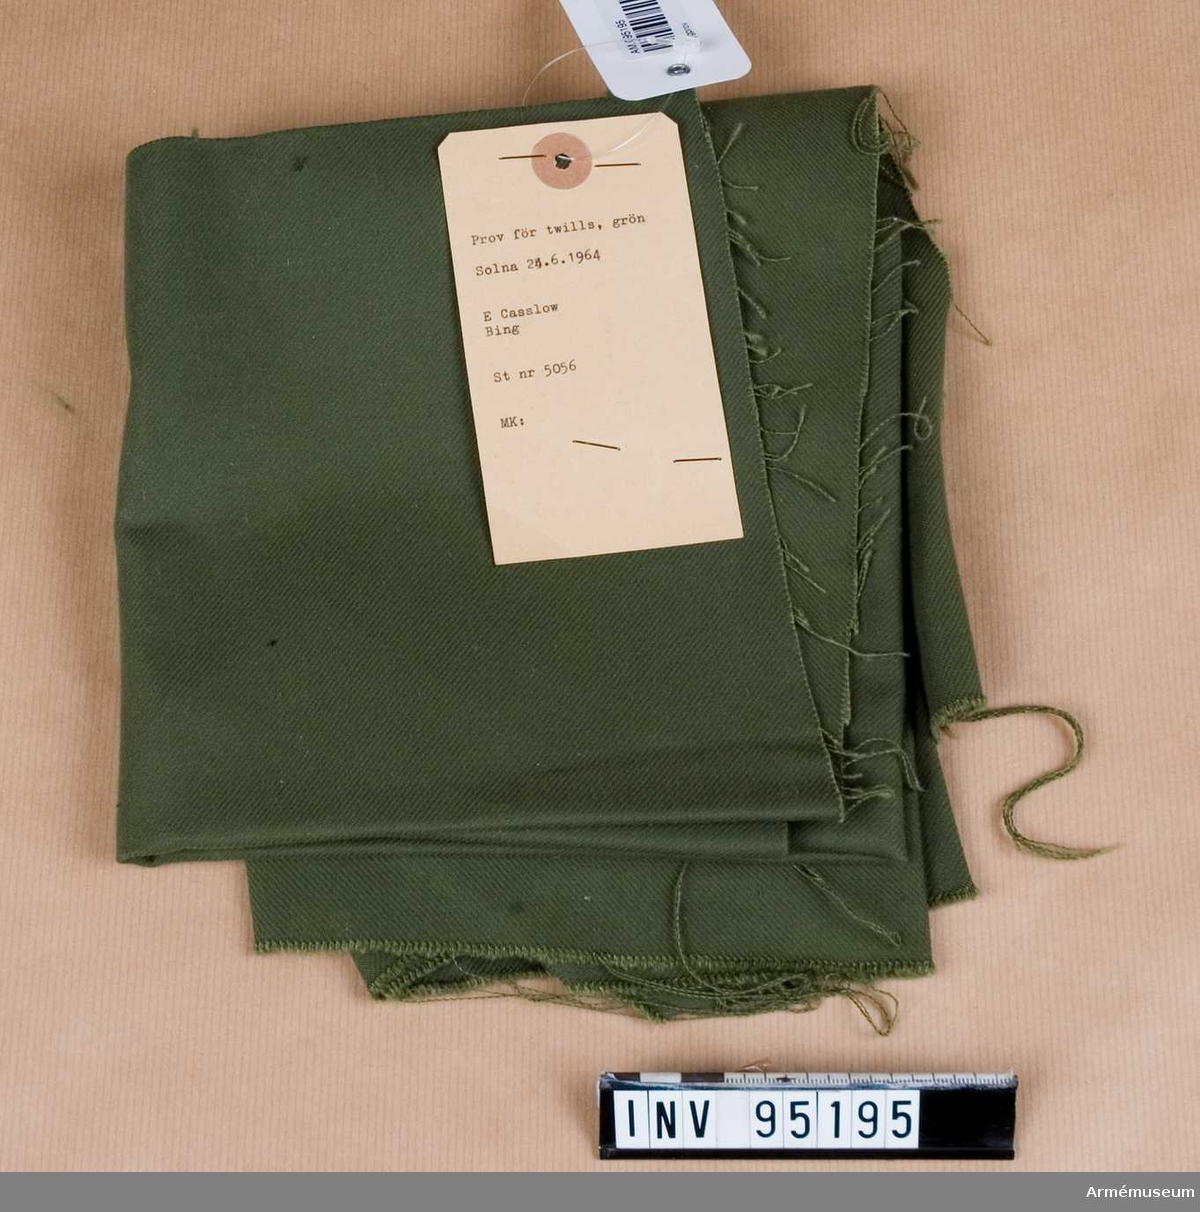 Text på etikett: "Prov för twills, grön. Solna 24.6.1964. E Casslow, Bing. St nr 5056. MK:"